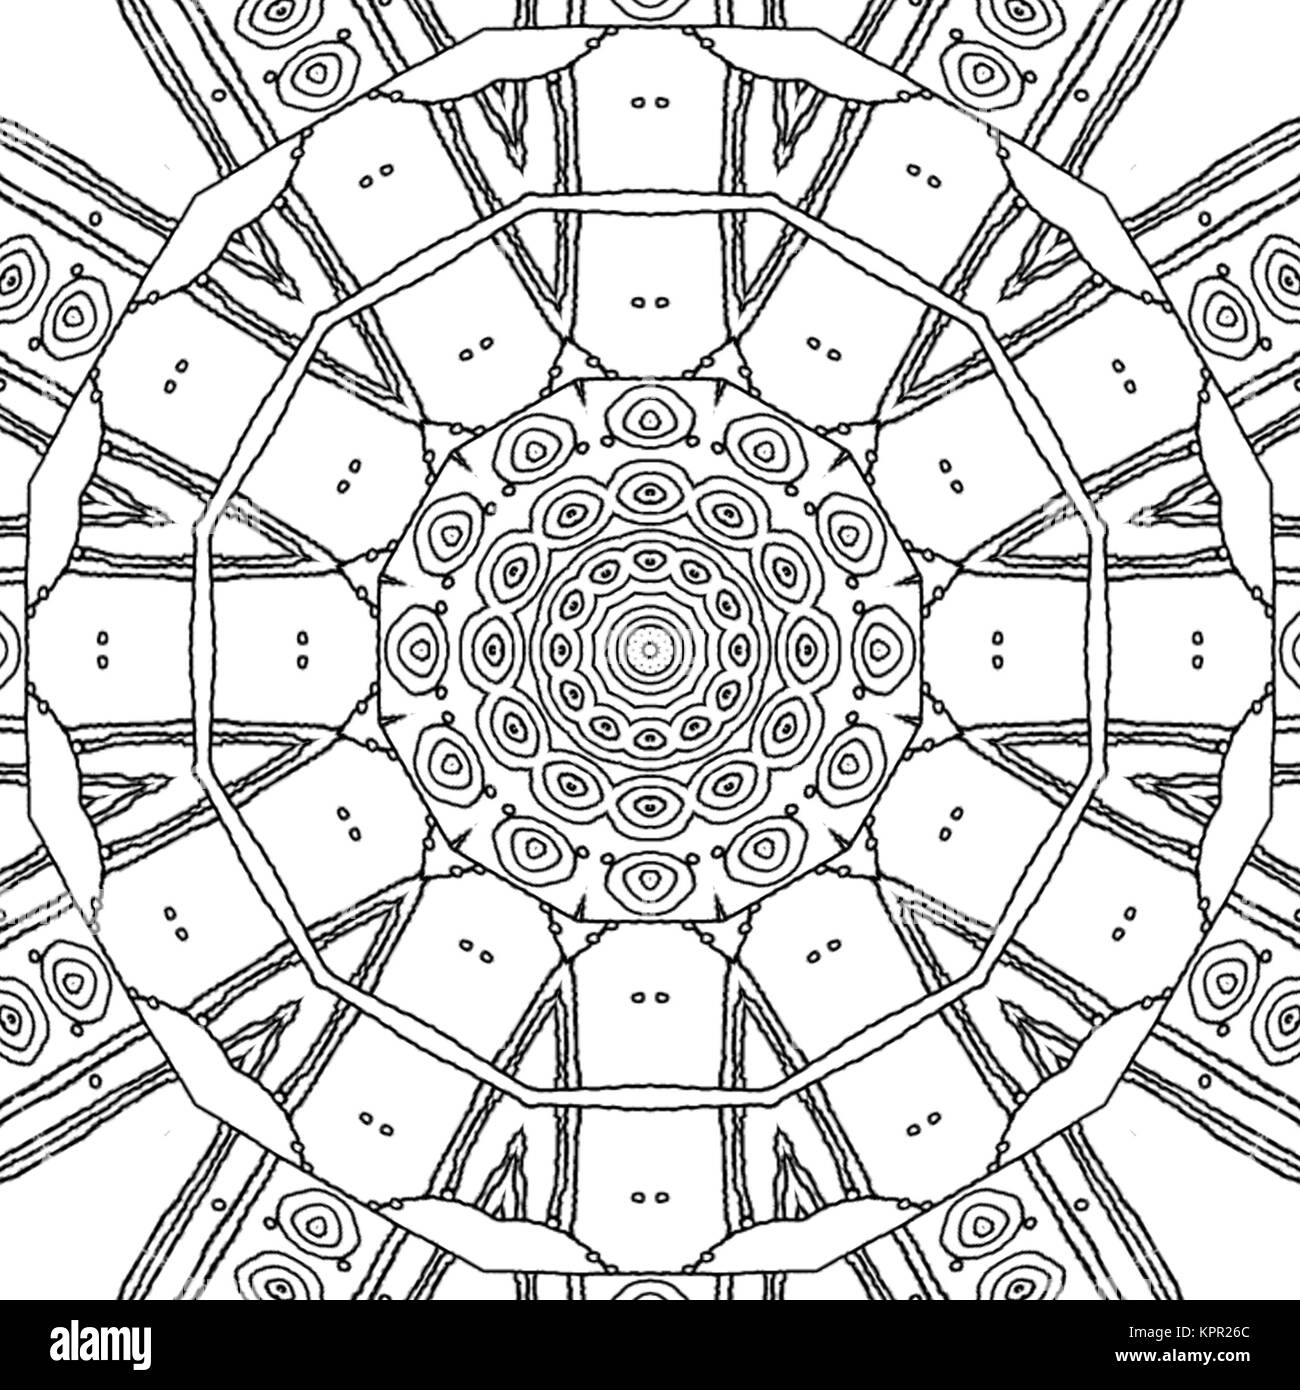 Zusammenfassung nahtlose Färbung Seite. Monochrome Mandala mit konzentrischen Kreis Muster, verzierte und verträumt Zeichnung. Stockfoto